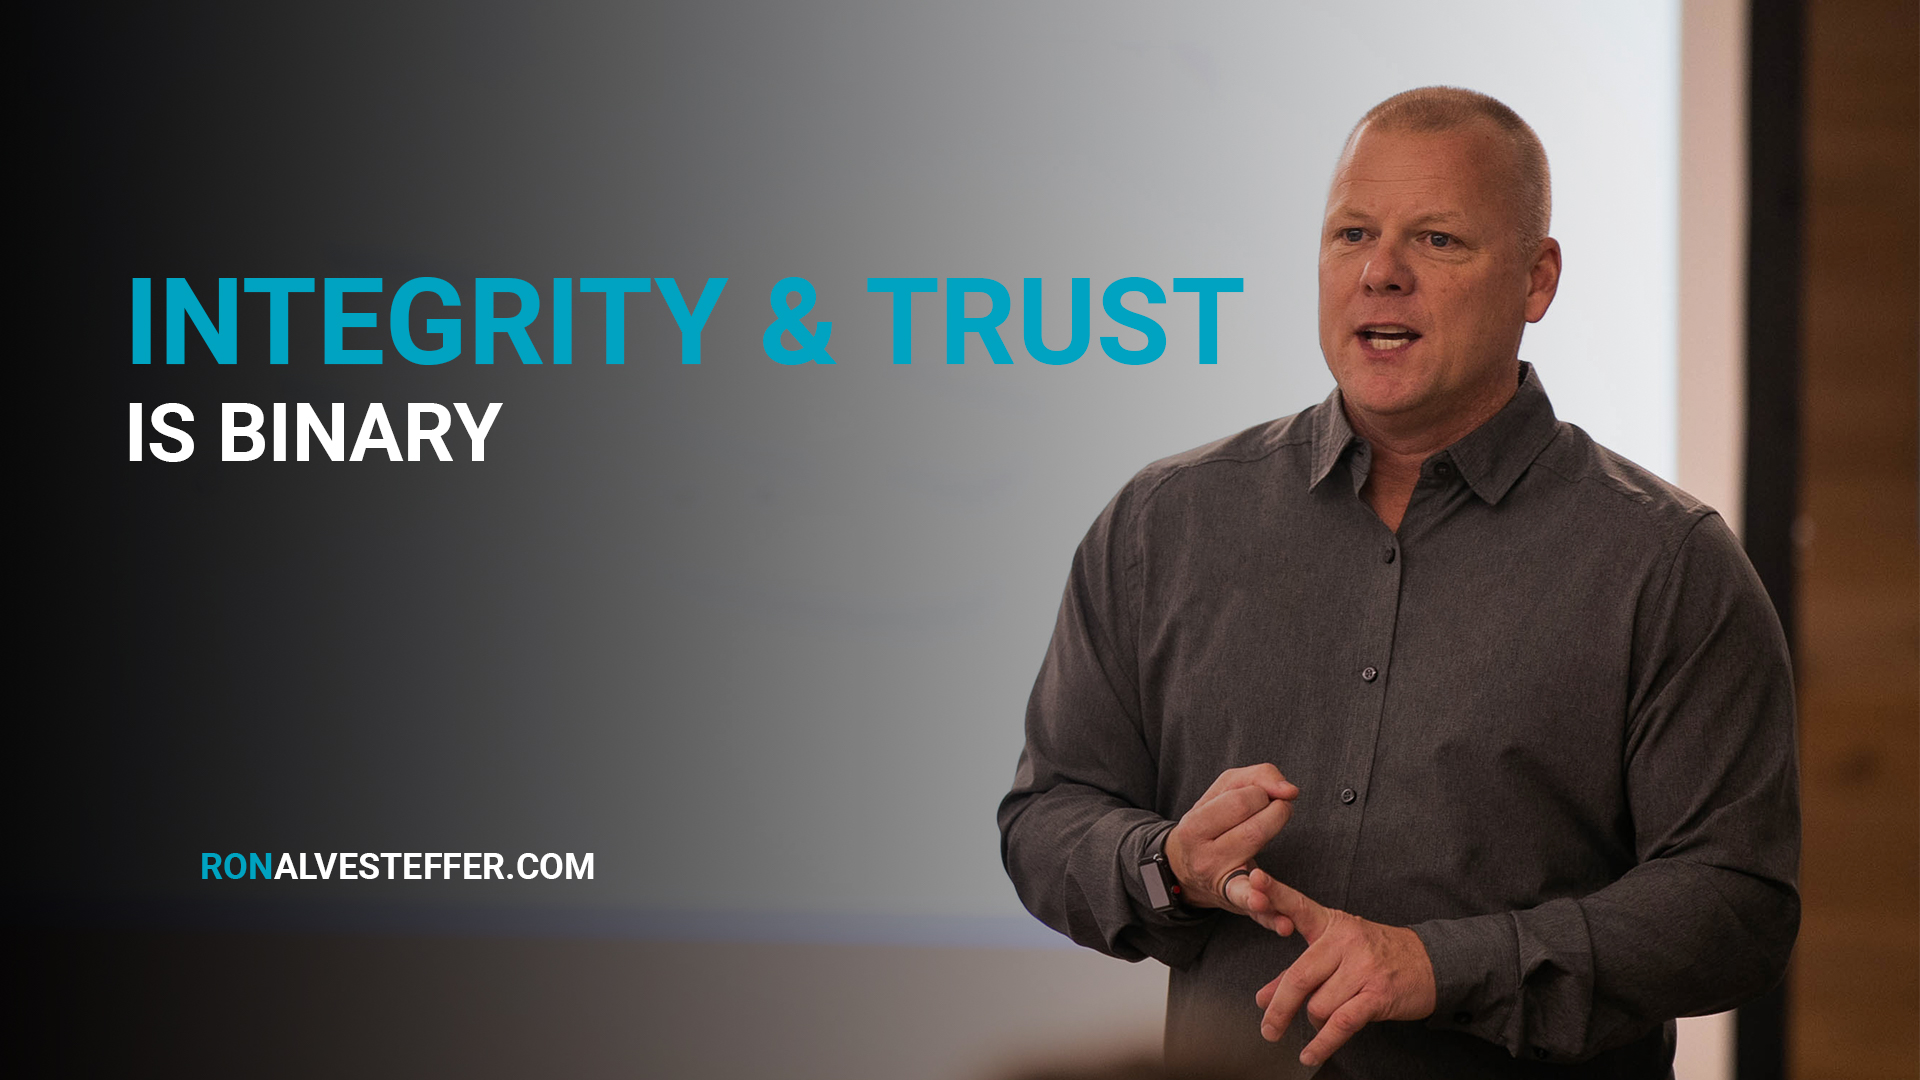 Integrity & Trust is Binary